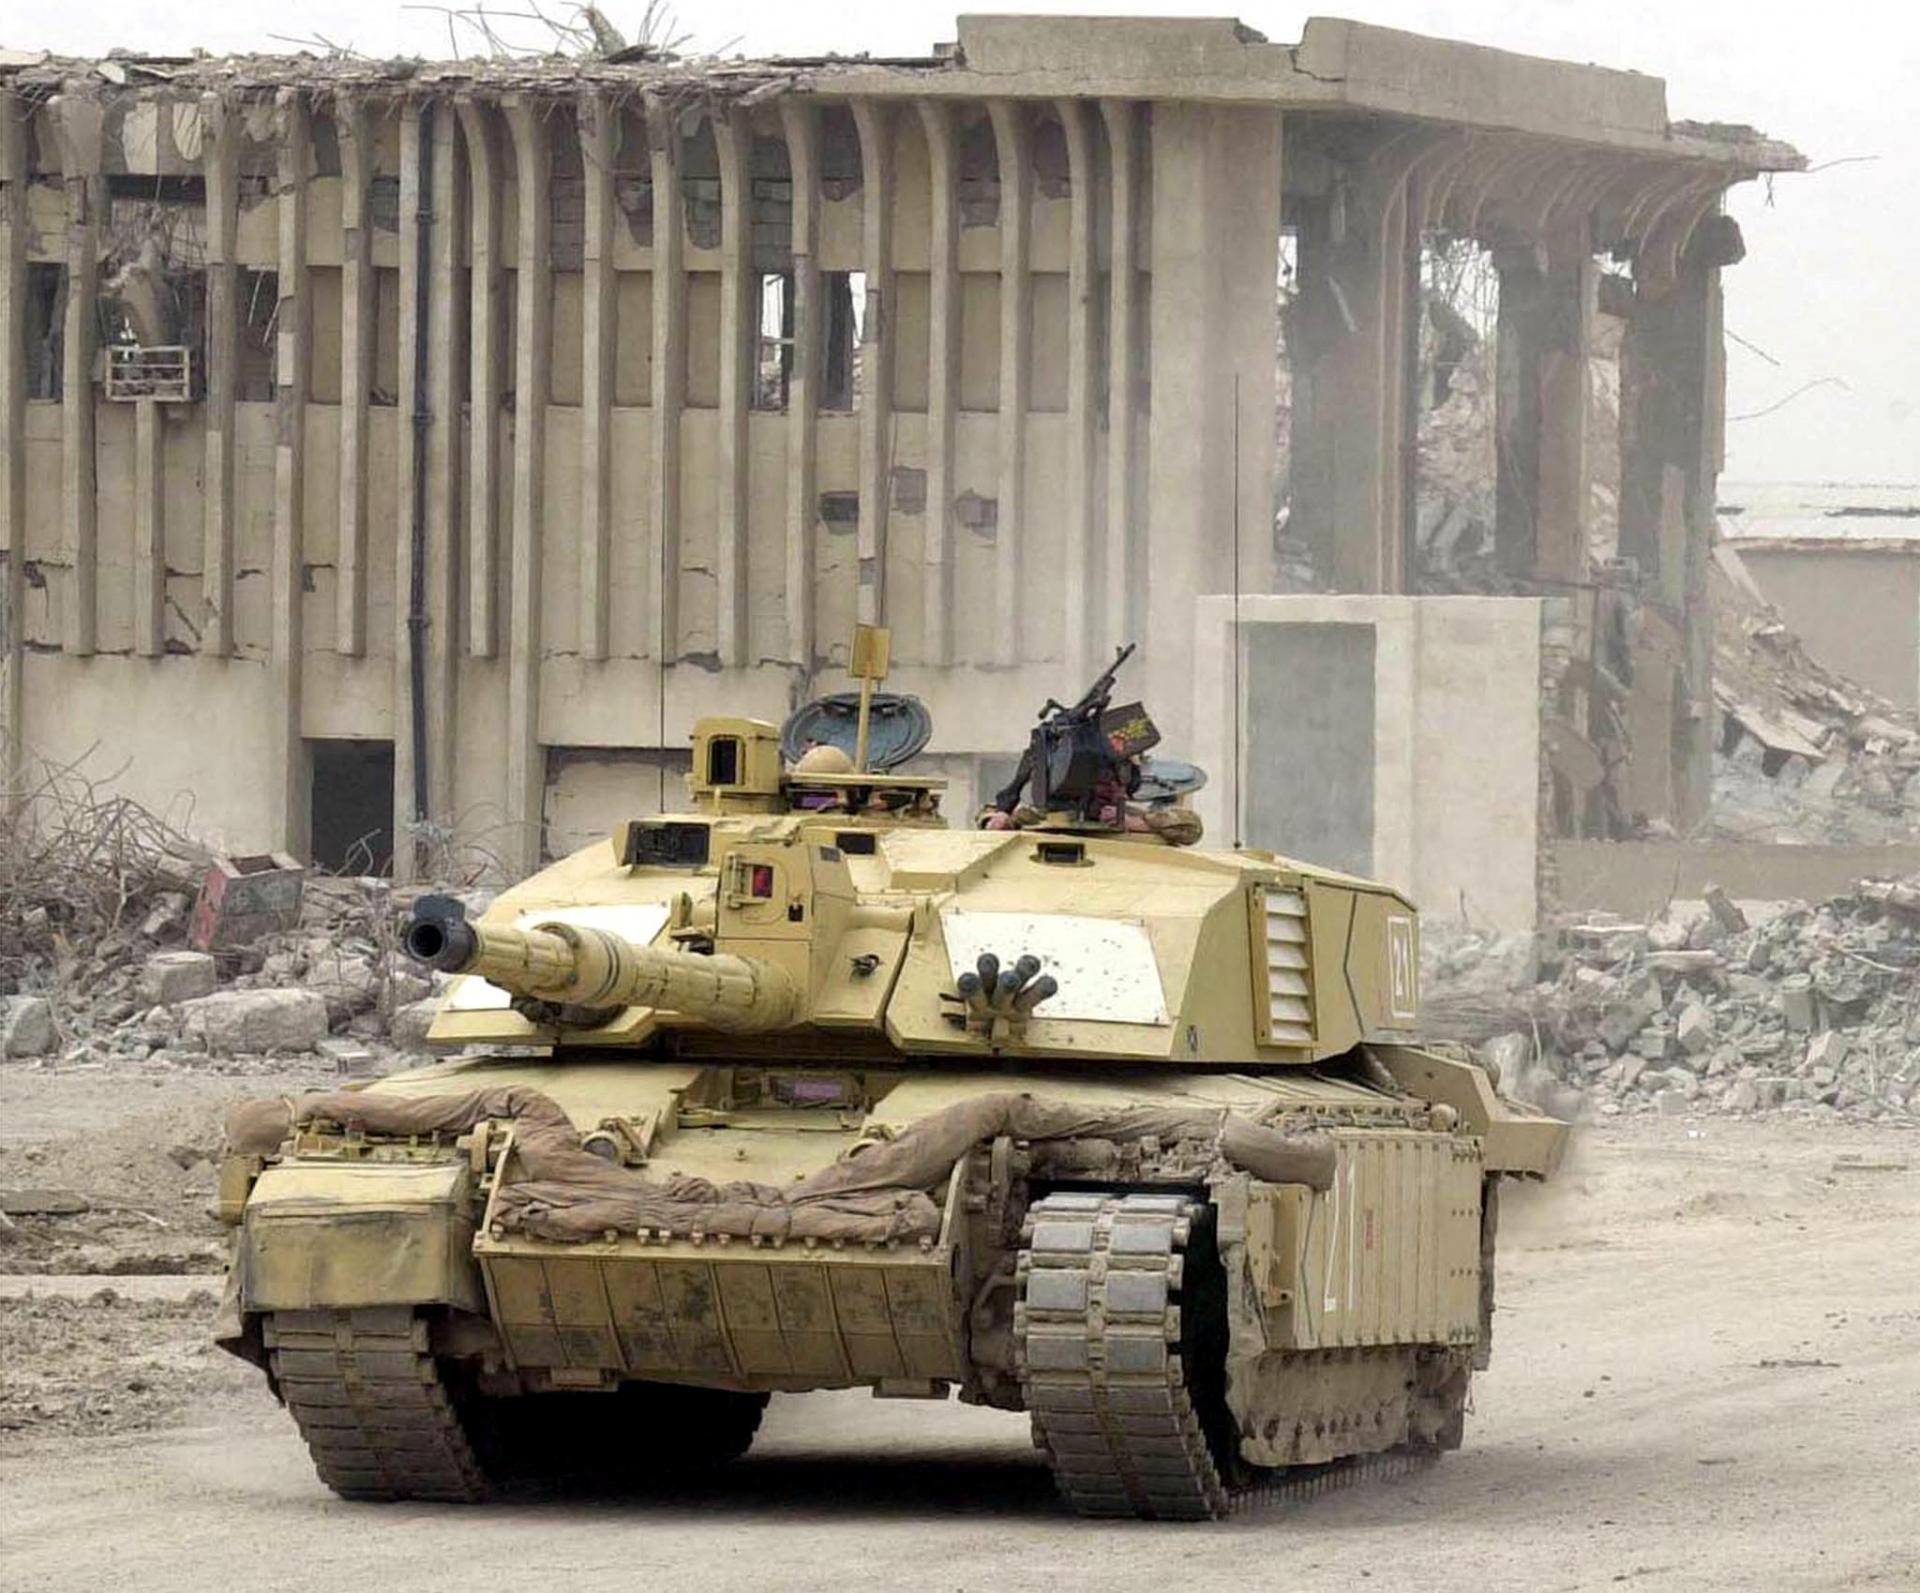 Británia pošle Ukrajine moderné bojové tanky. Stane sa tak prvou západnou krajinou, ktorá tak spraví